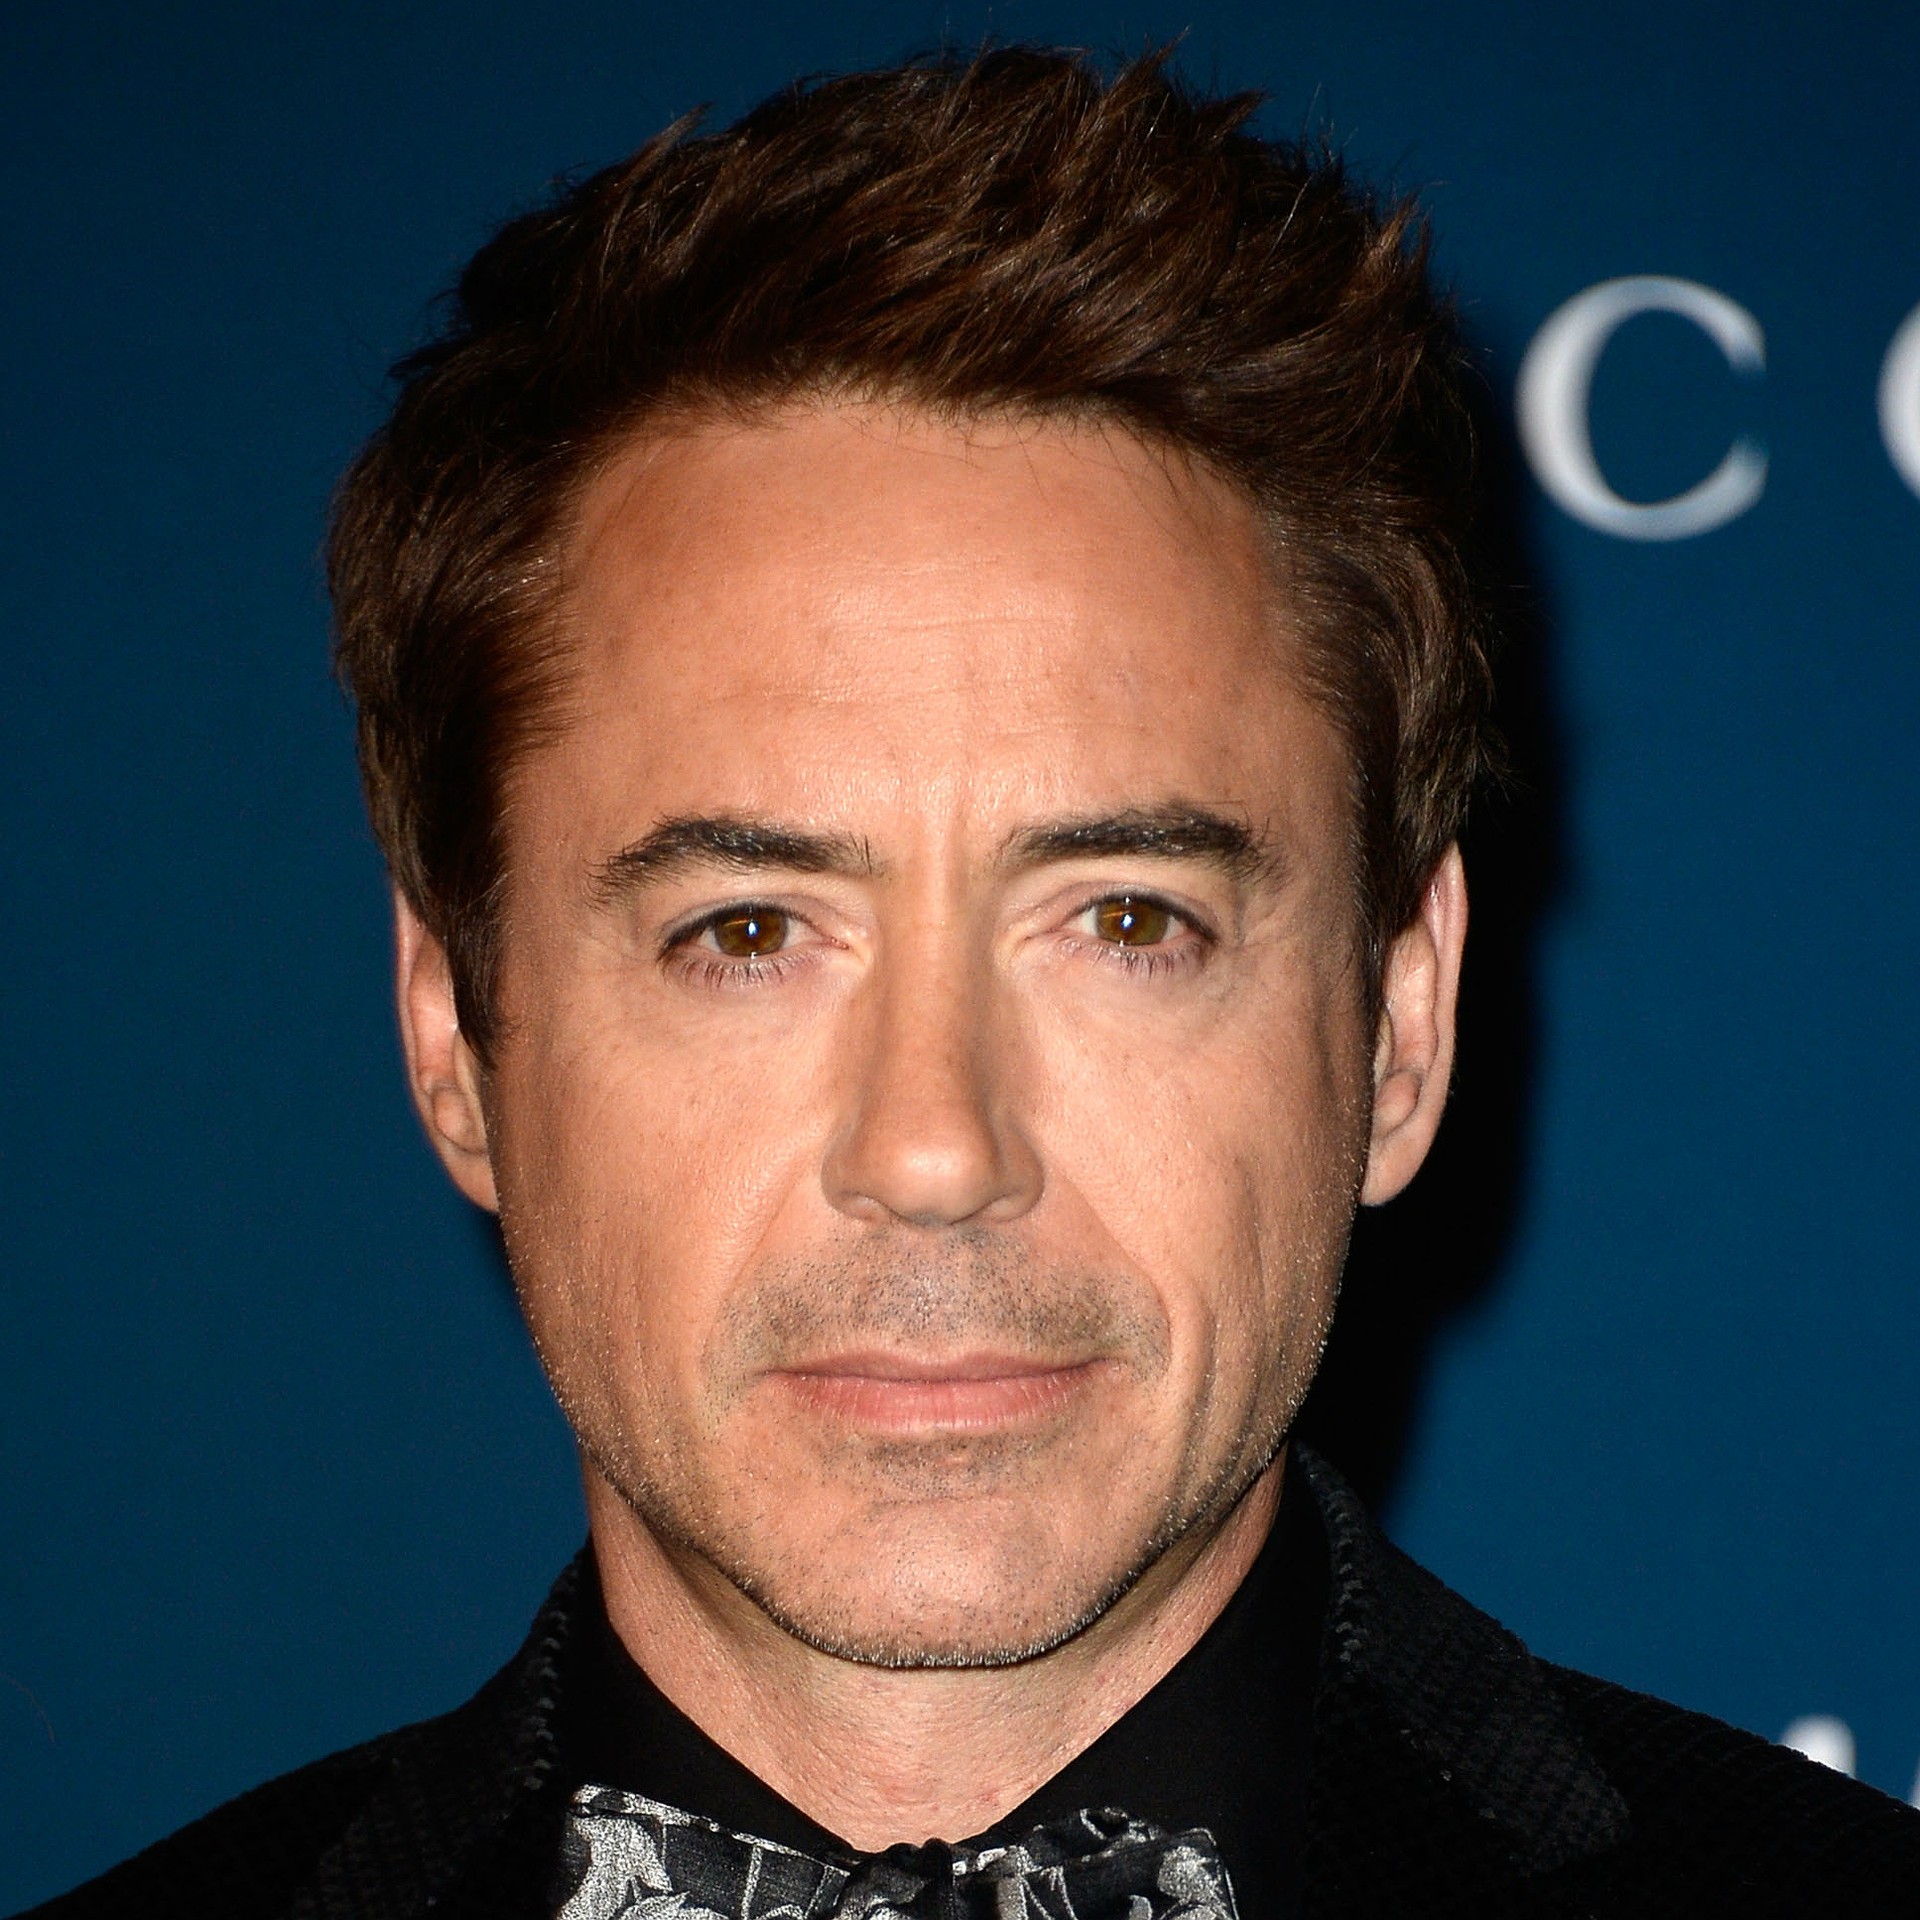 Robert Downey Jr. pode ser o 'Homem de Ferro', mas, aos 48 anos de idade, não levou a estatueta nas duas ocasiões em que foi indicado. (Foto: Getty Images)